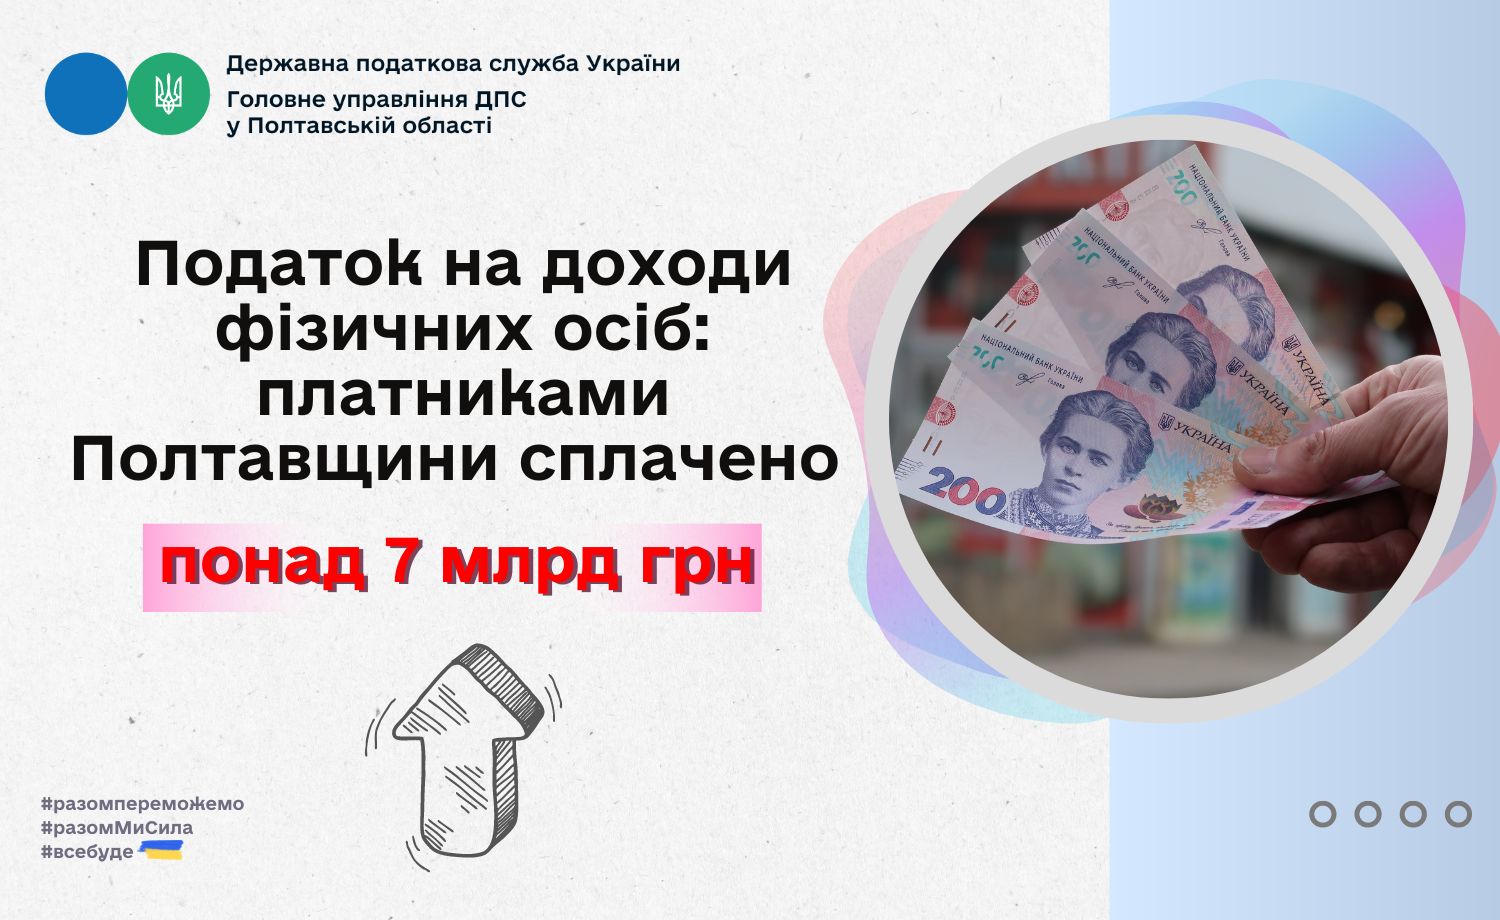 Податок на доходи фізичних осіб: платниками Полтавщини  сплачено понад 7 млрд грн.